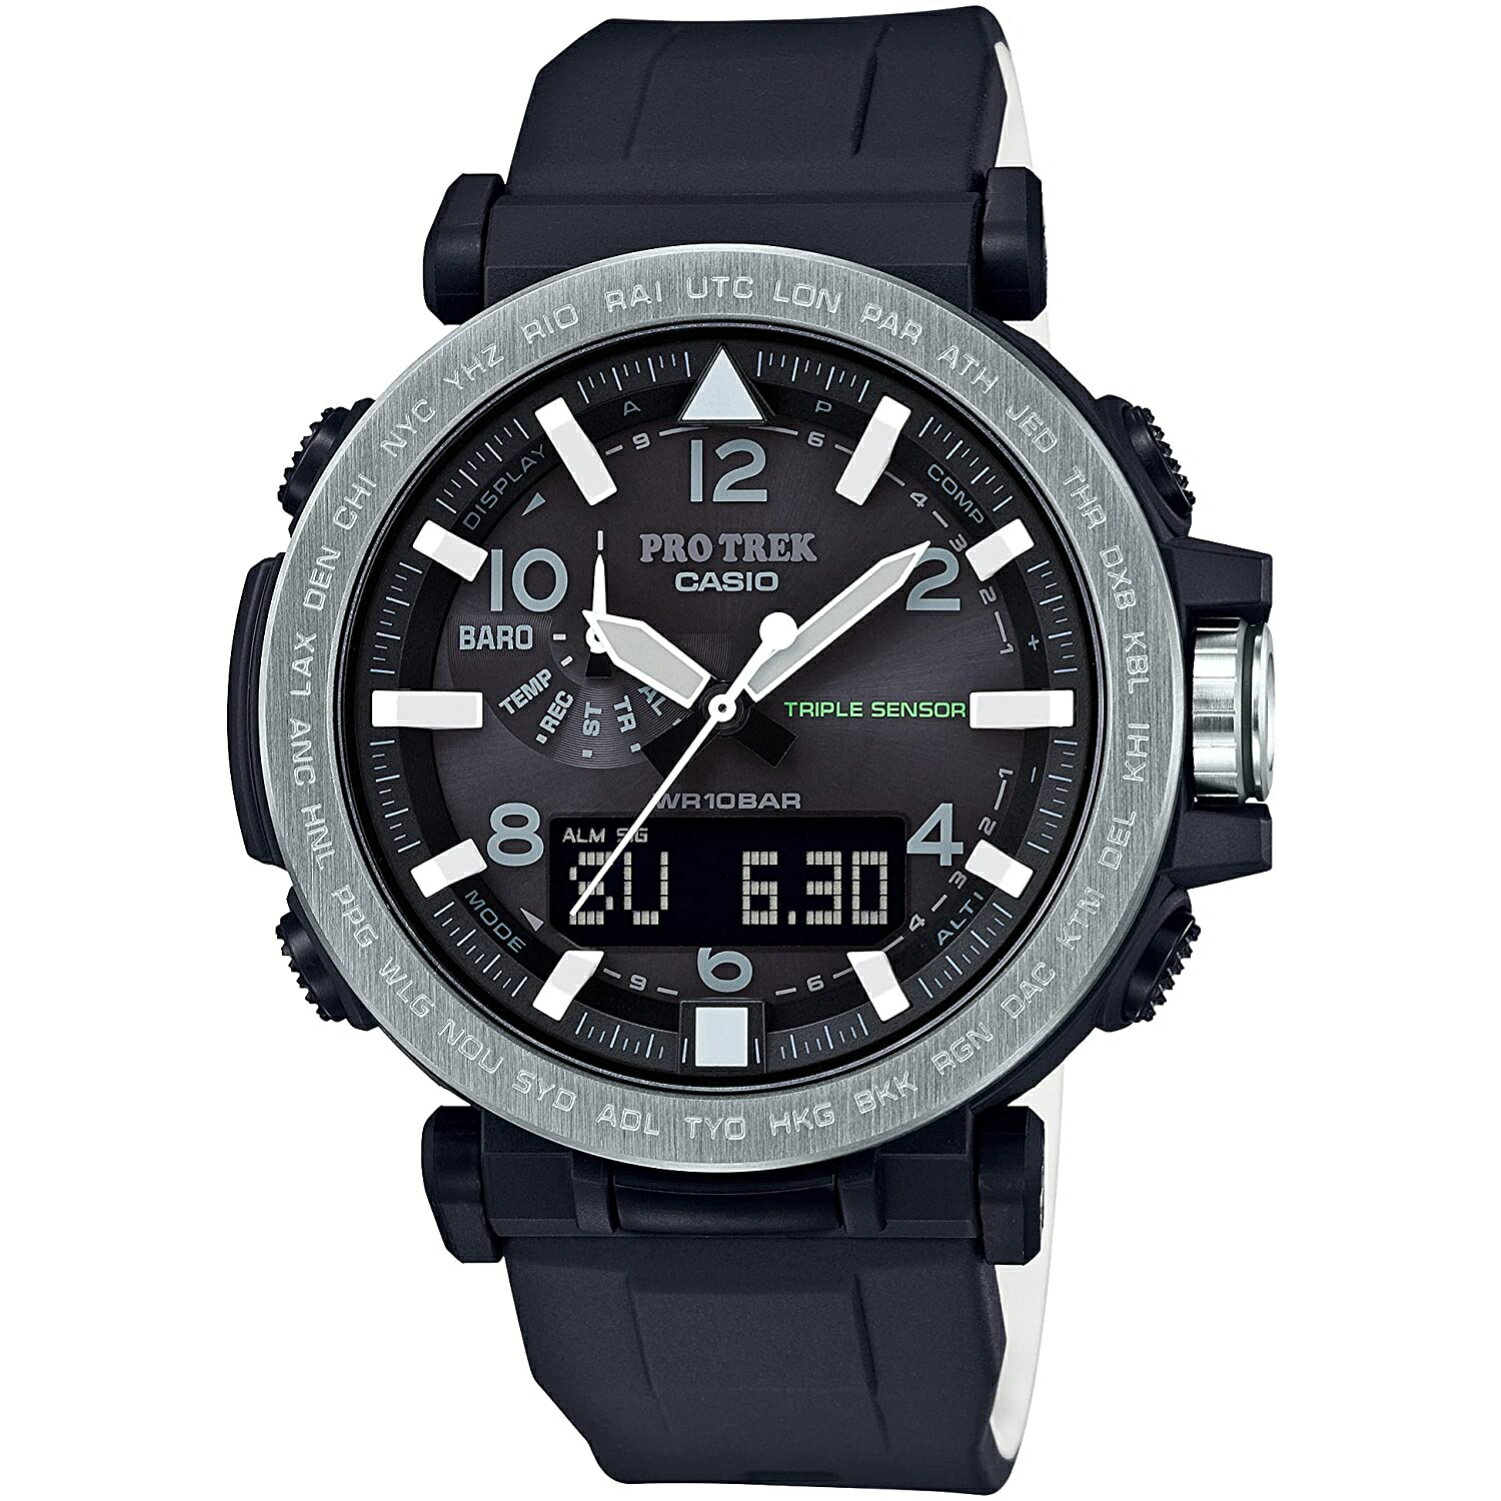 新品 CASIO PROTREK カシオ プロトレック 男性用 メンズ ウオッチ ソーラー 時計 腕時計 PRG-650-1